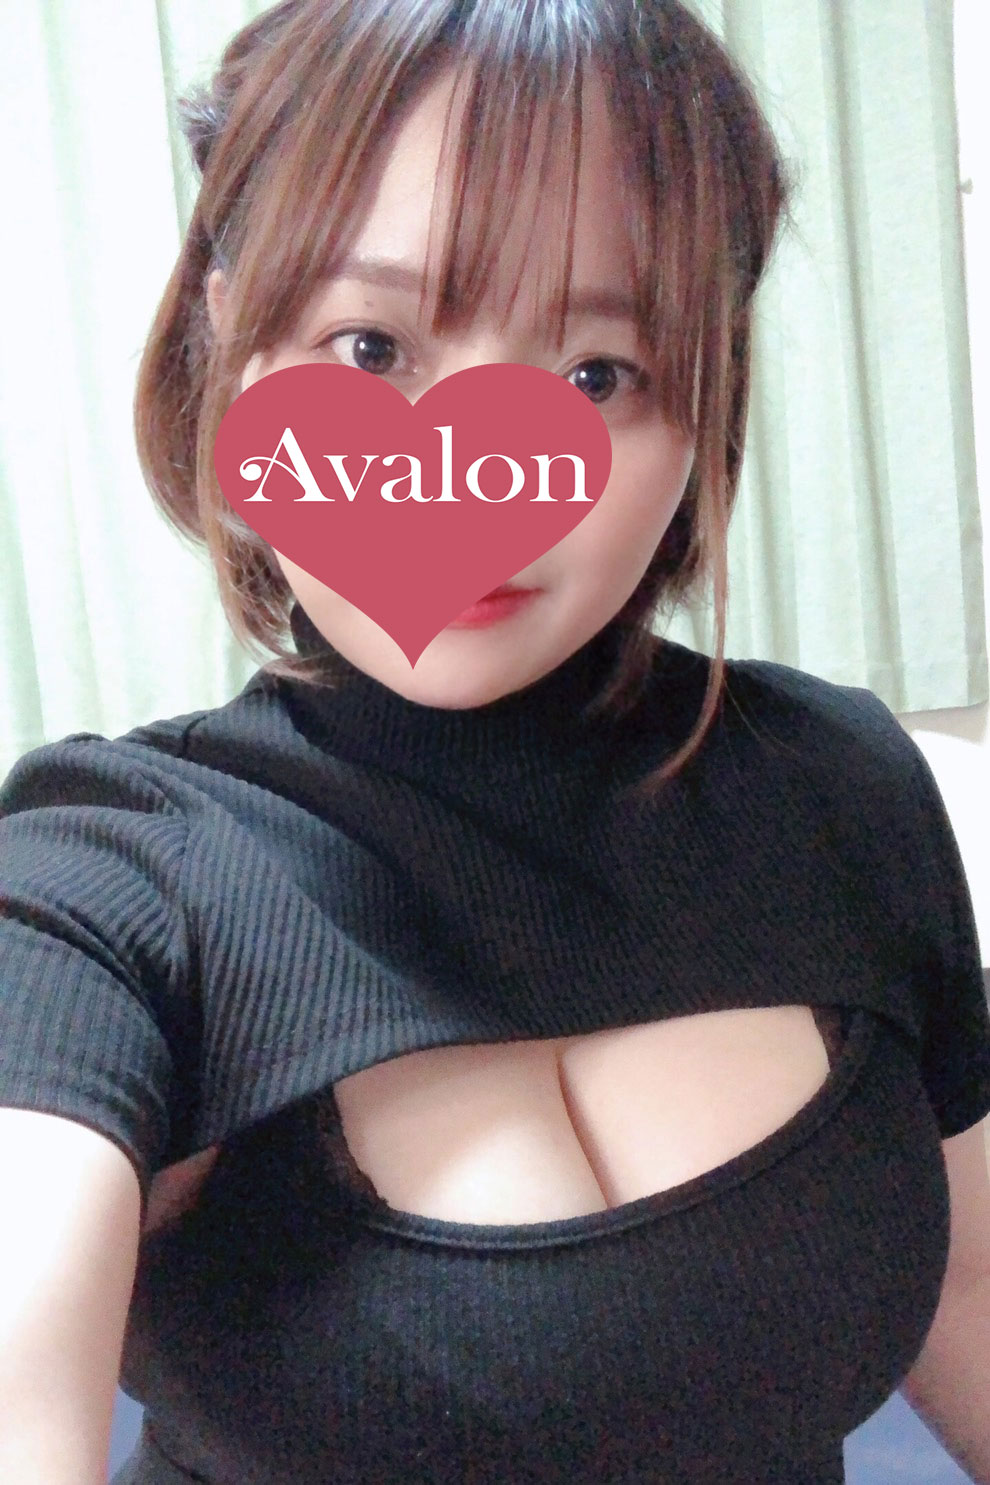 Avalon～アヴァロン/いとう (26)